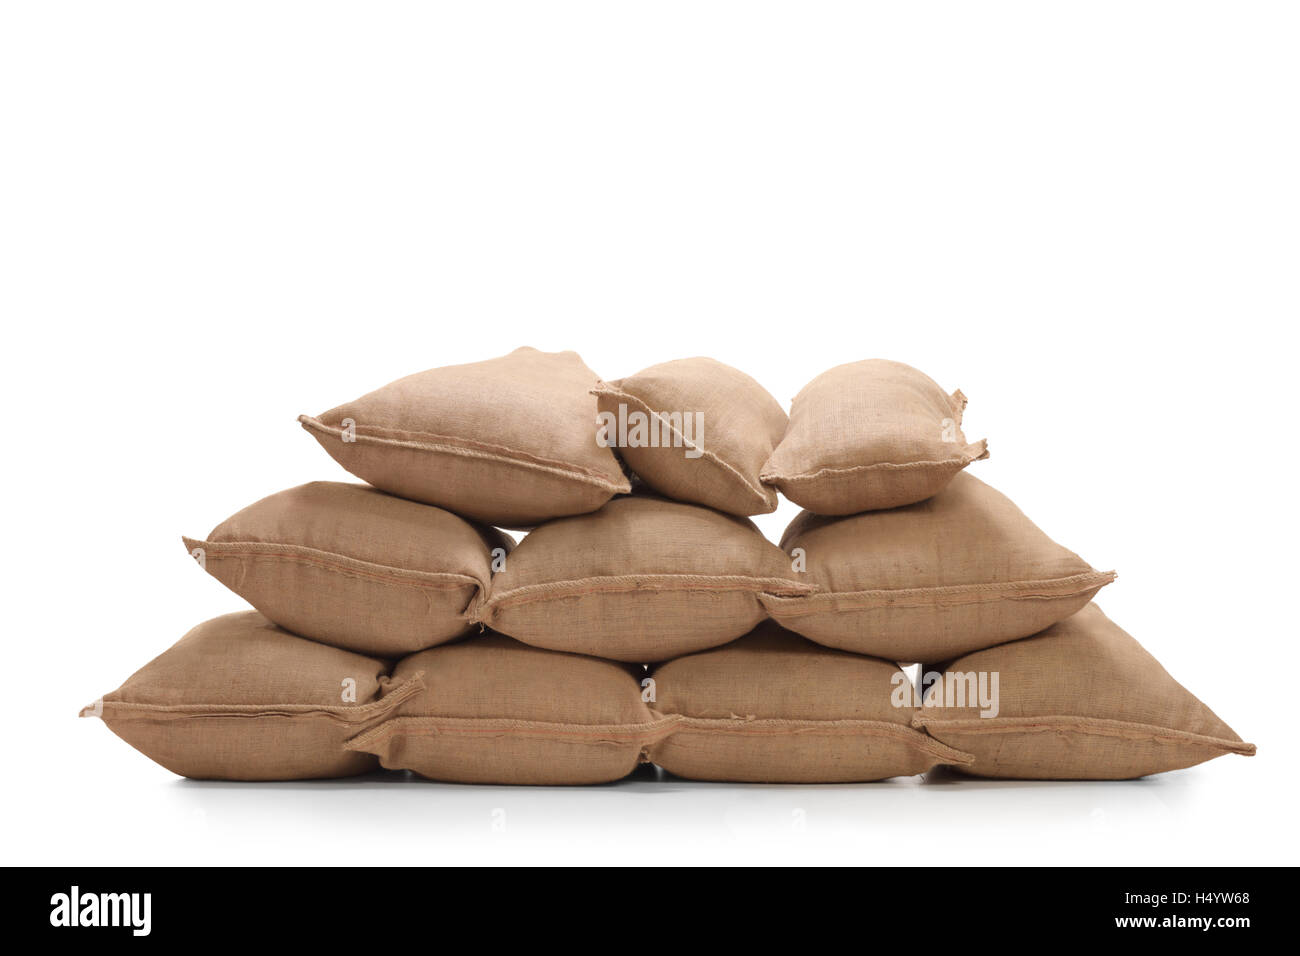 Pile of burlap sacks isolated on white background Stock Photo